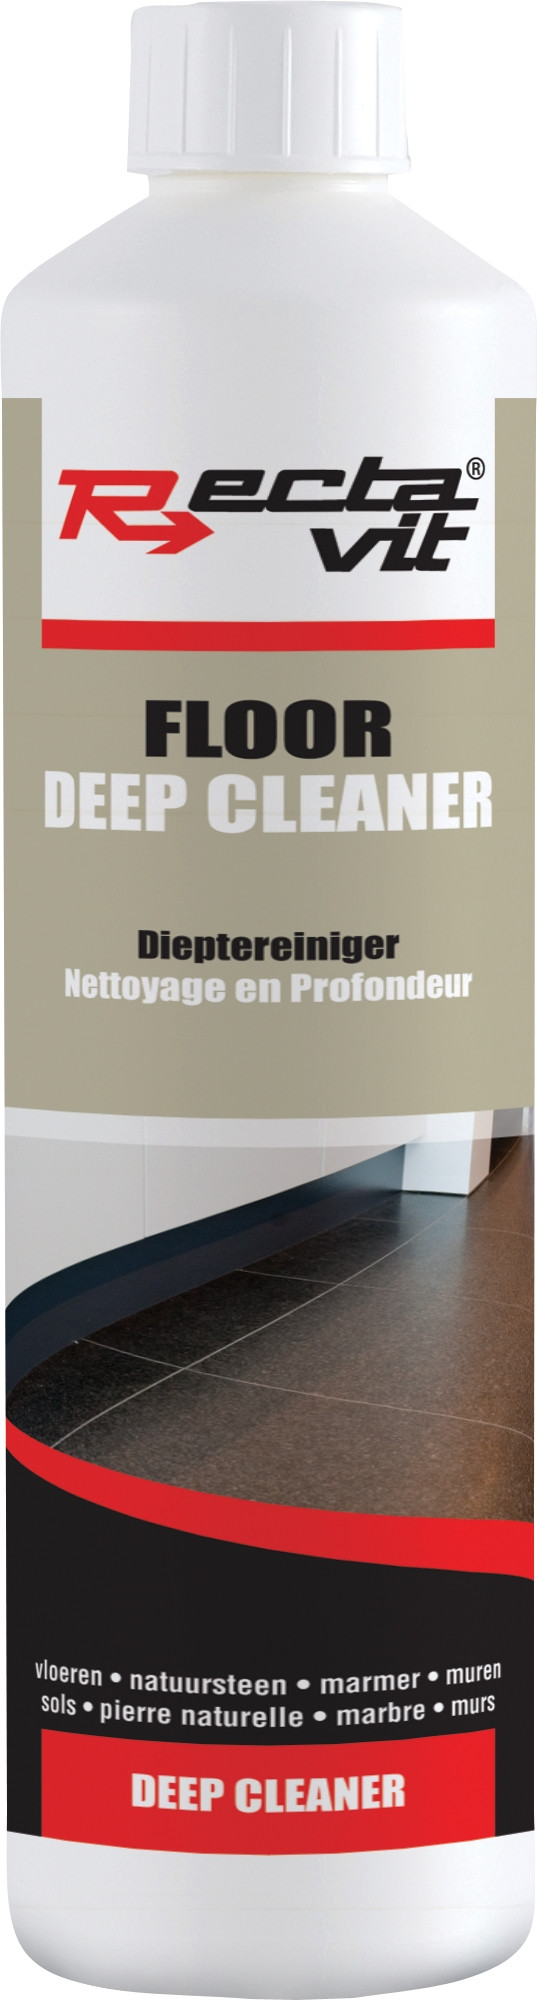 FLOOR DEEP CLEANER 0.75 L